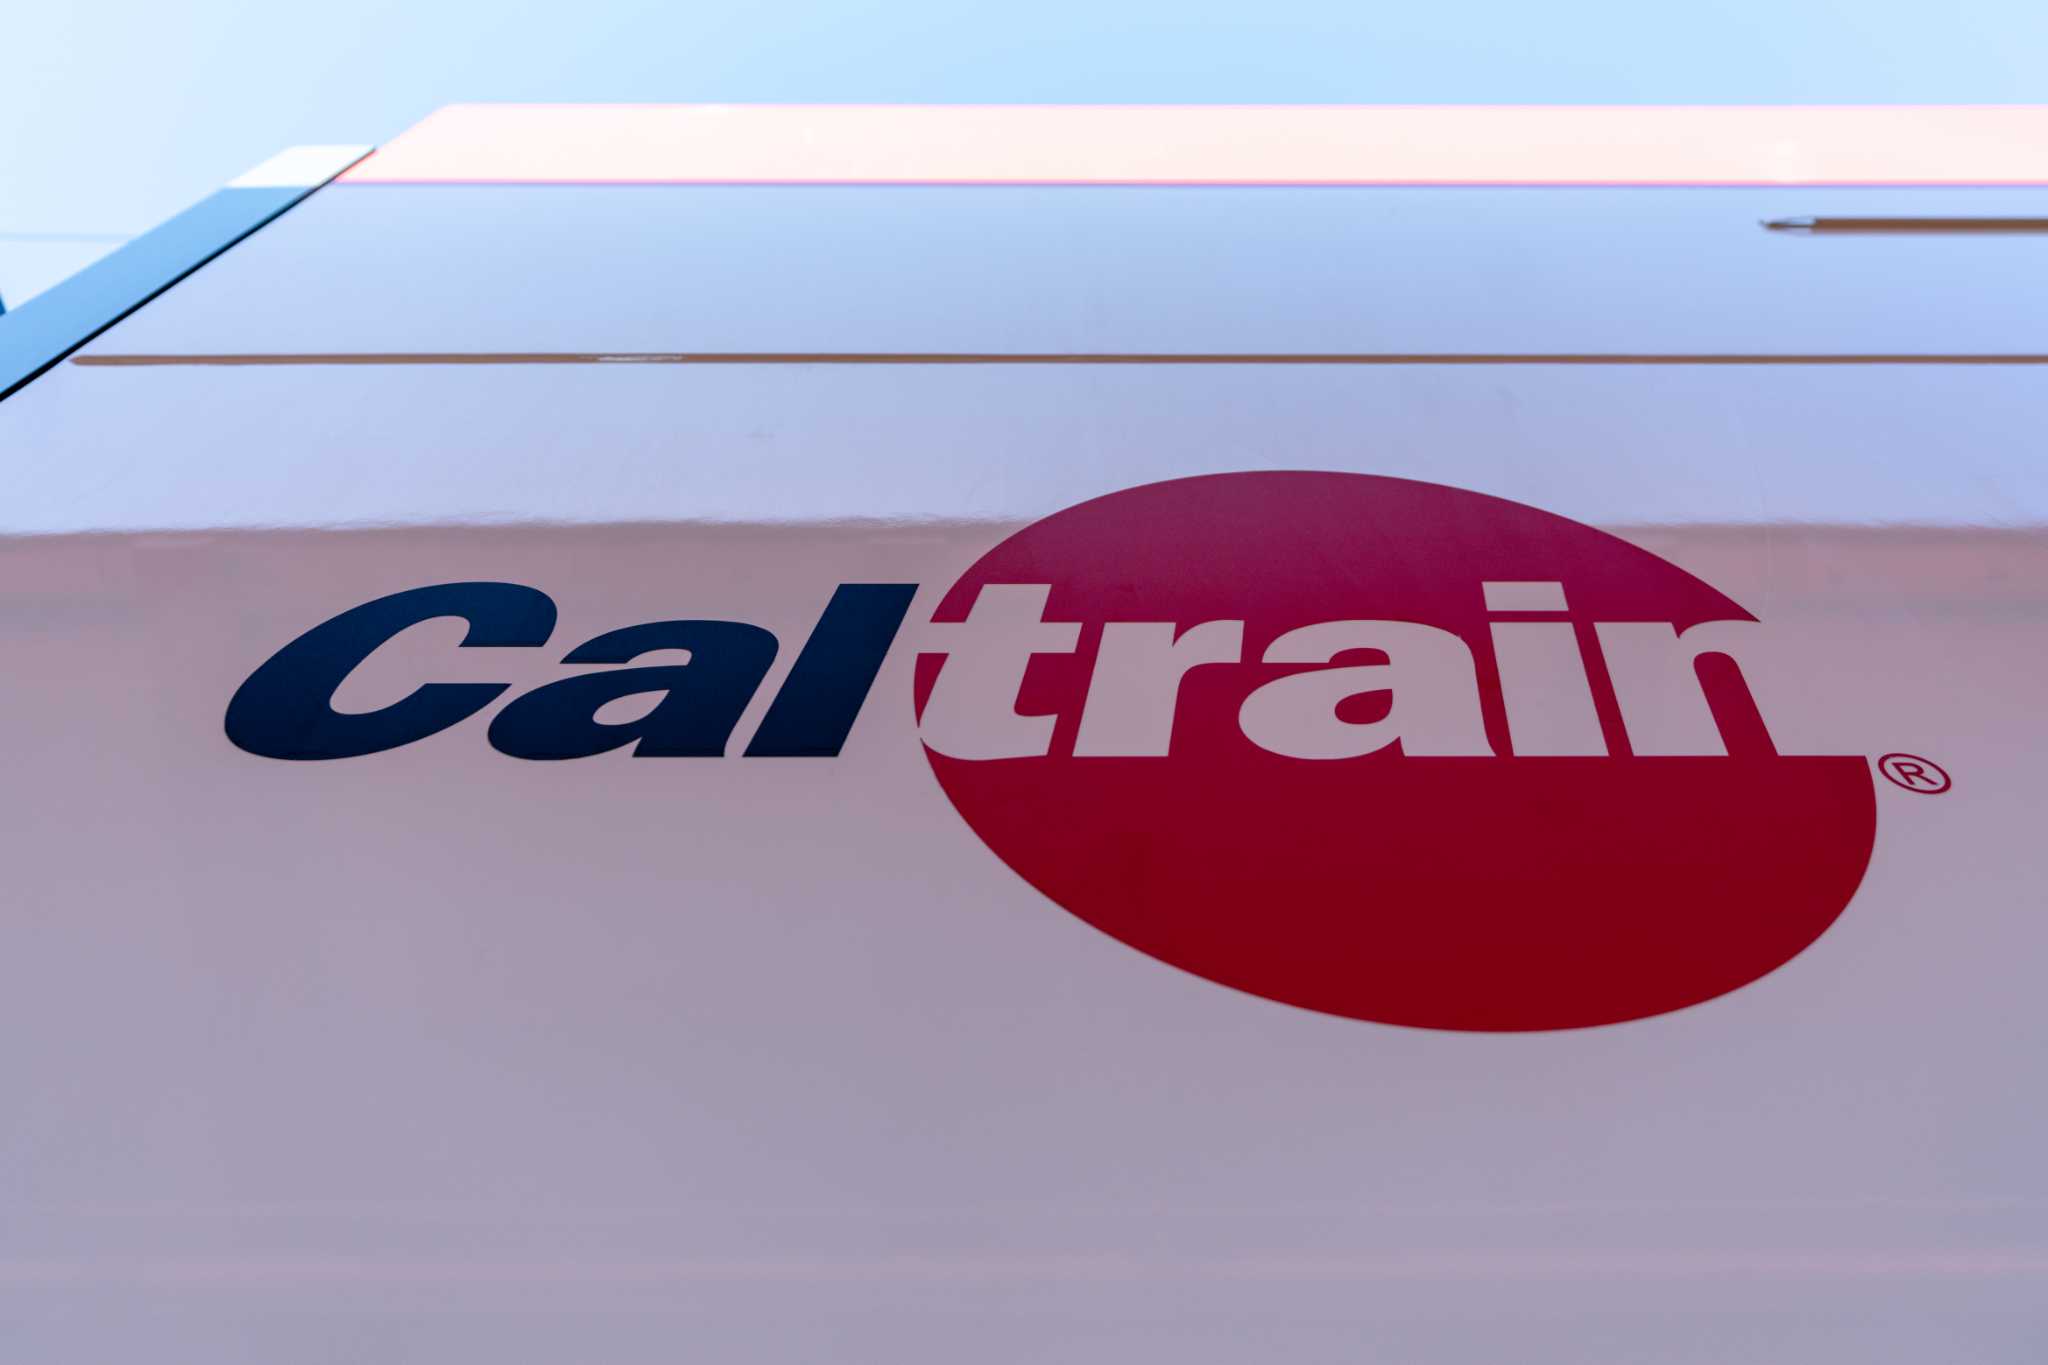 旧金山发生碰撞死亡事故，成为Caltrain今年第11起死亡事件